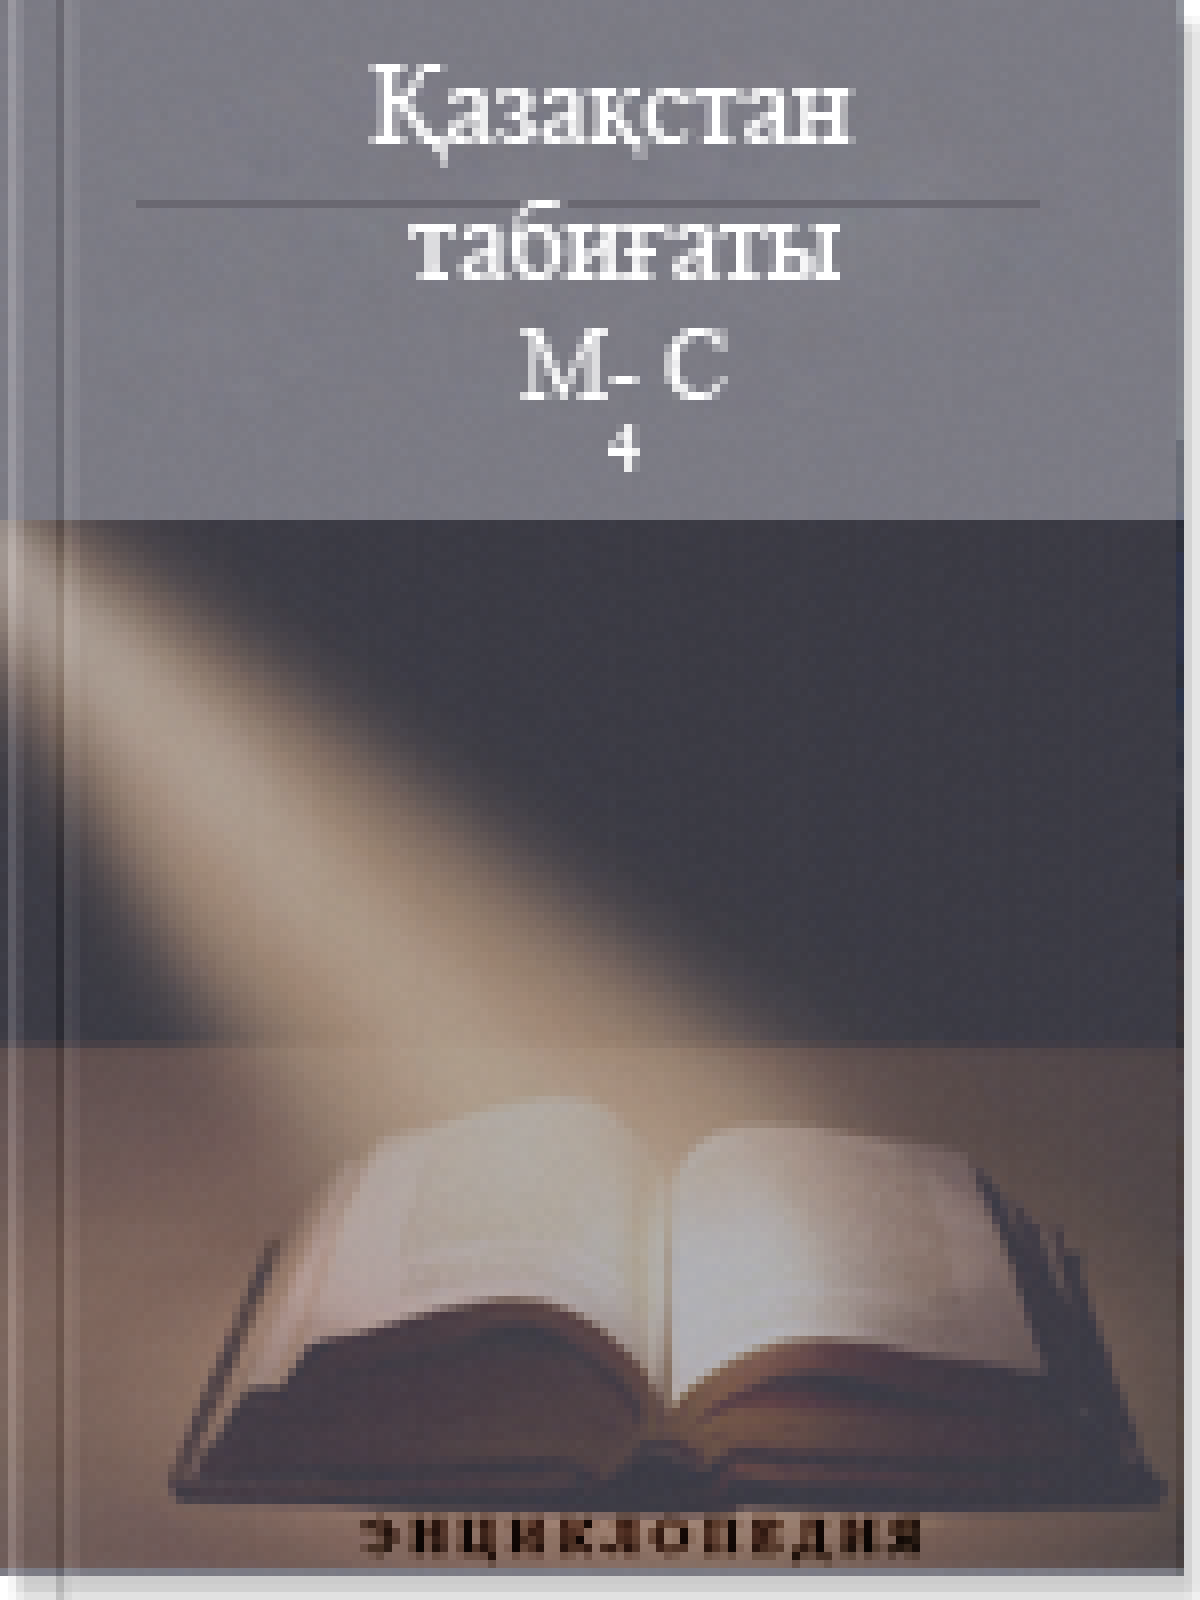 Қазақстан табиғаты 4 том М-С (4)